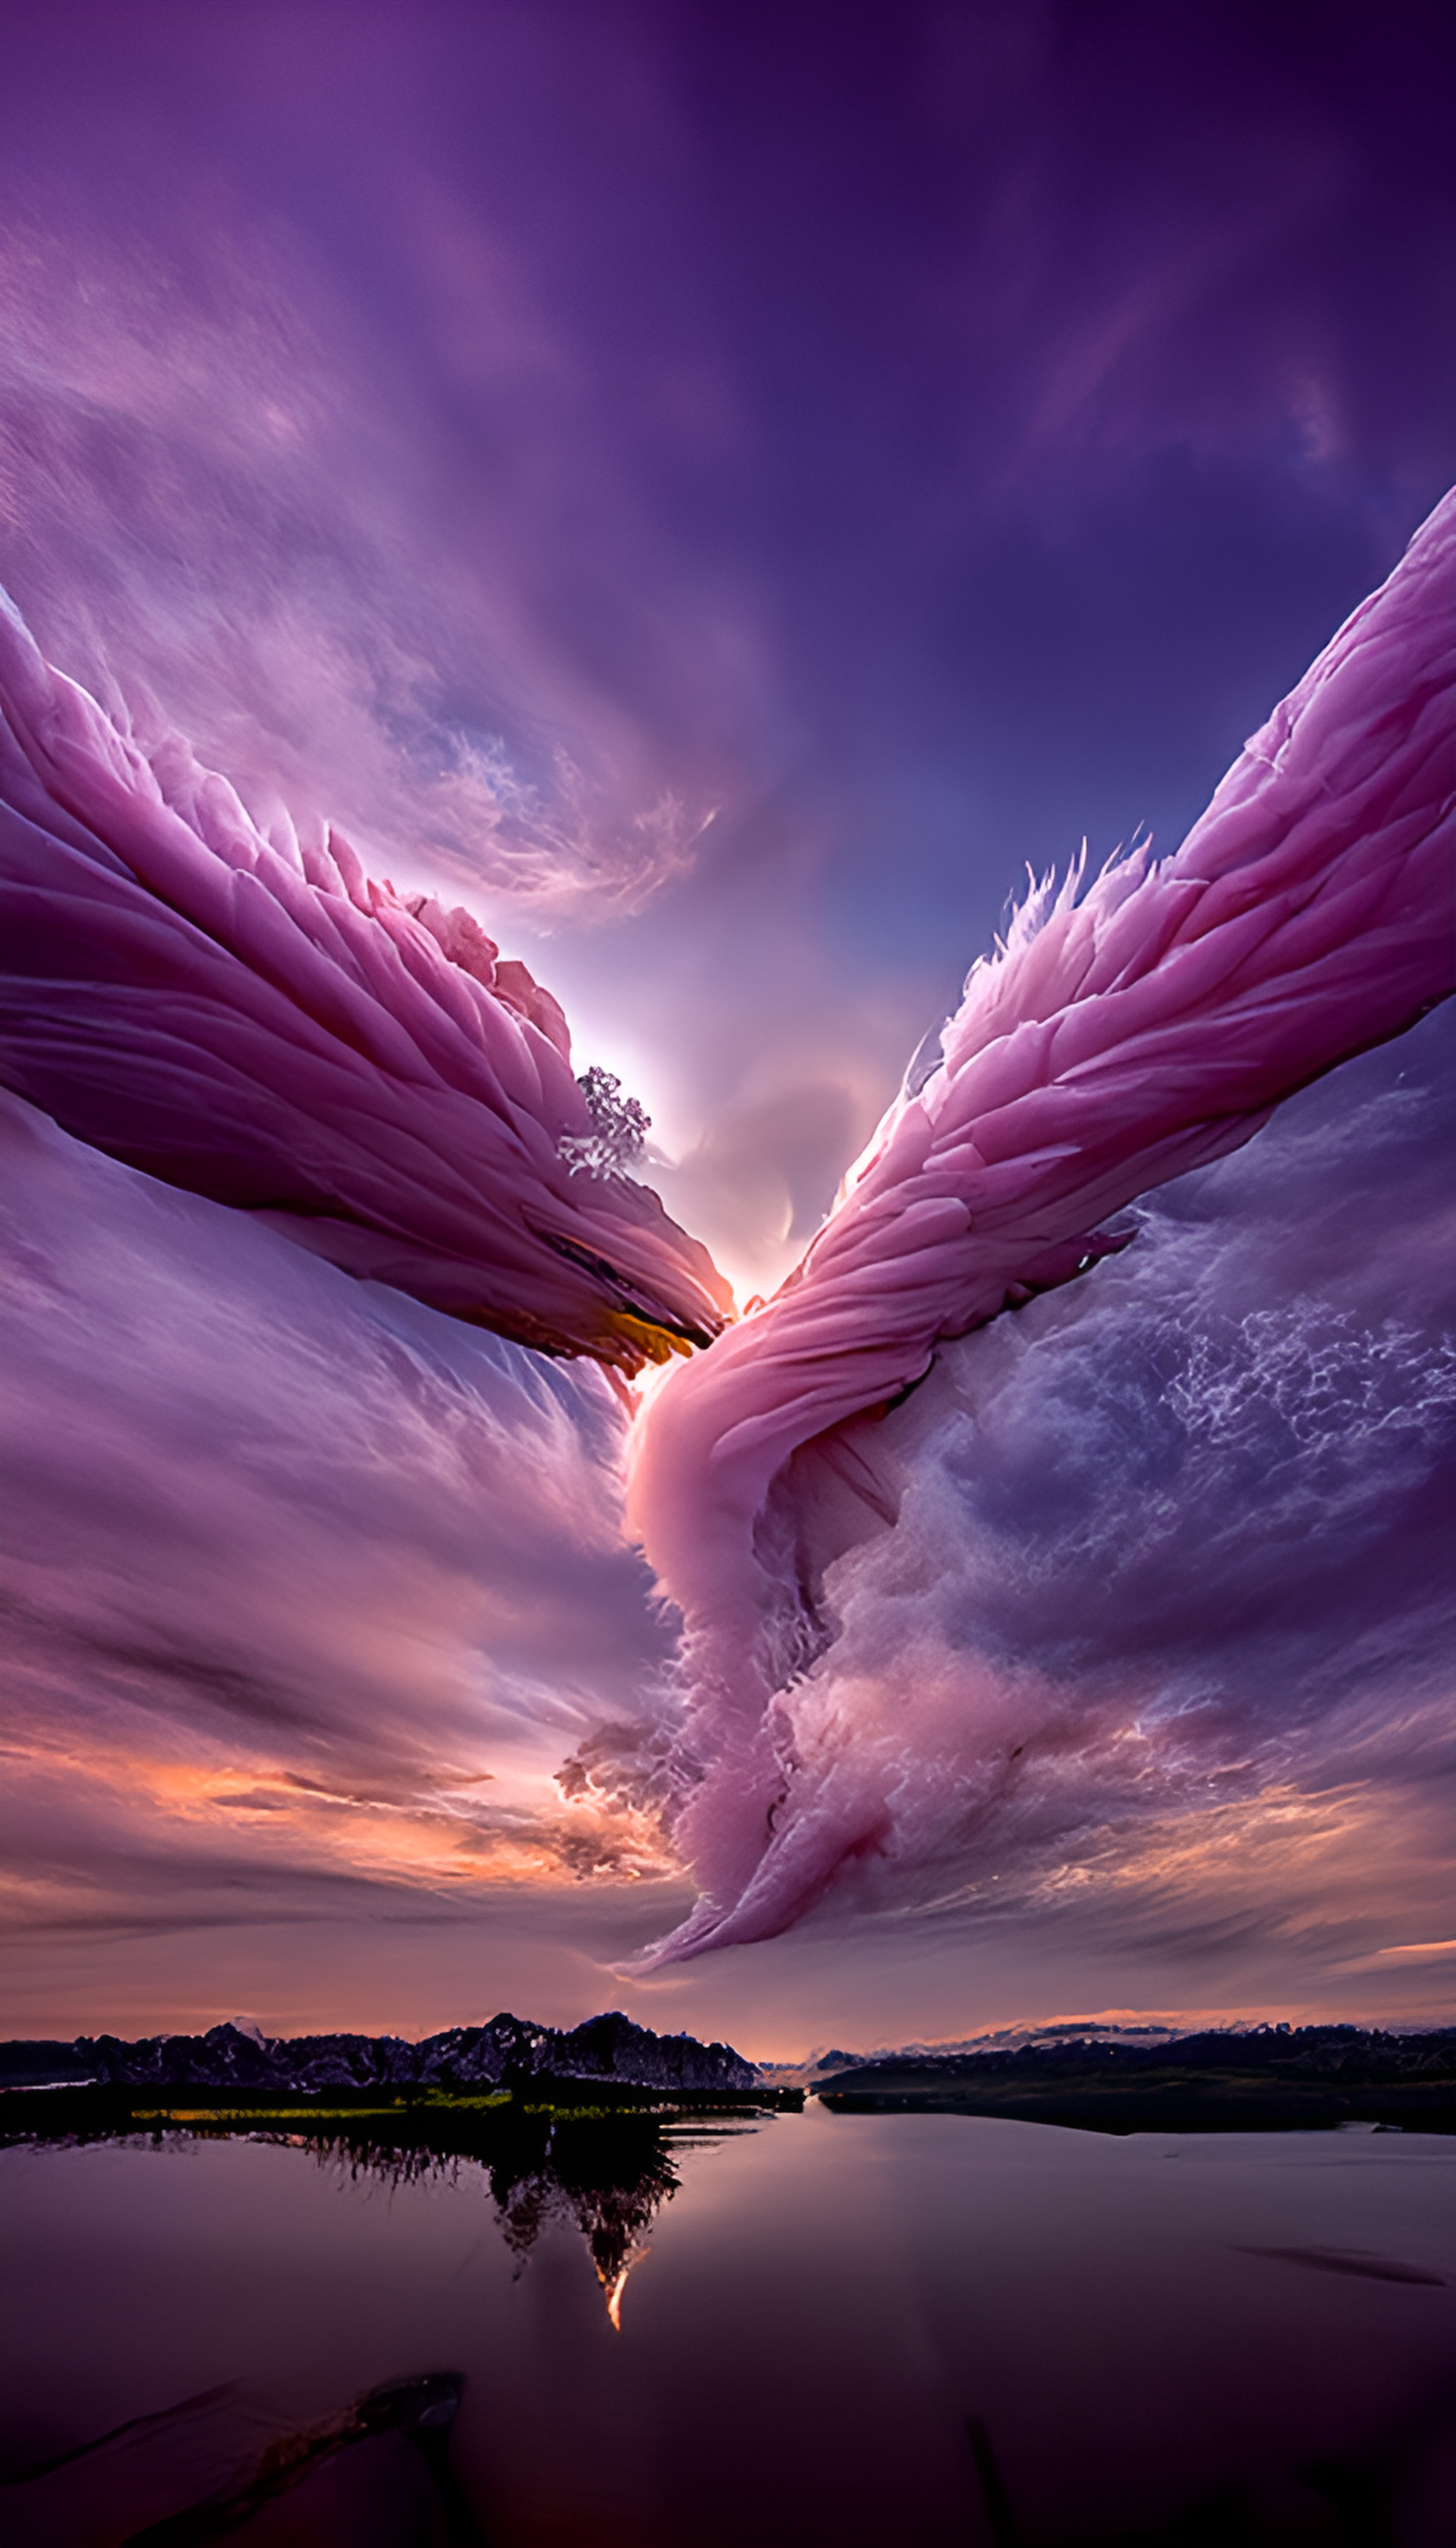 粉色天使翅膀